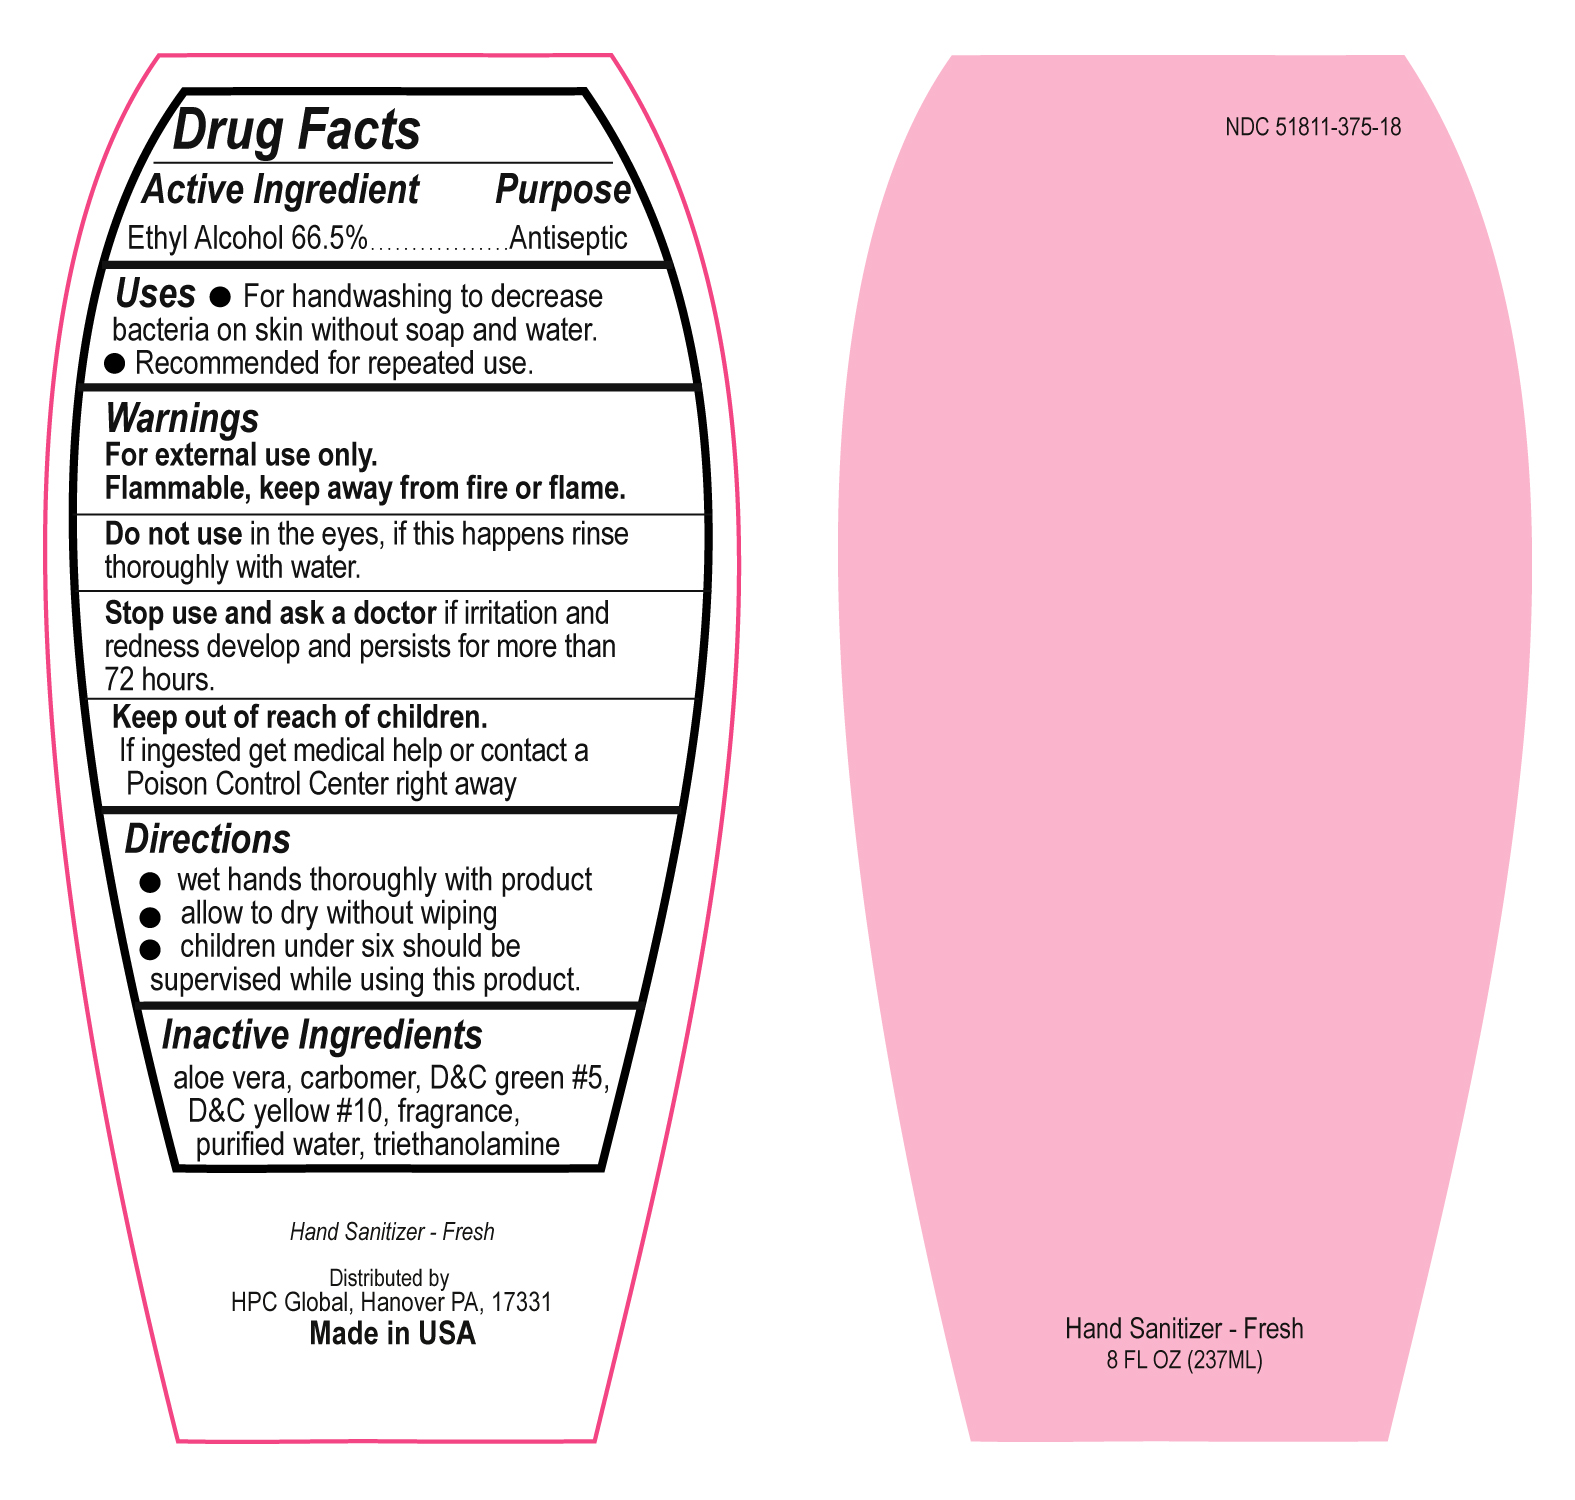 Image Drug Facts Label